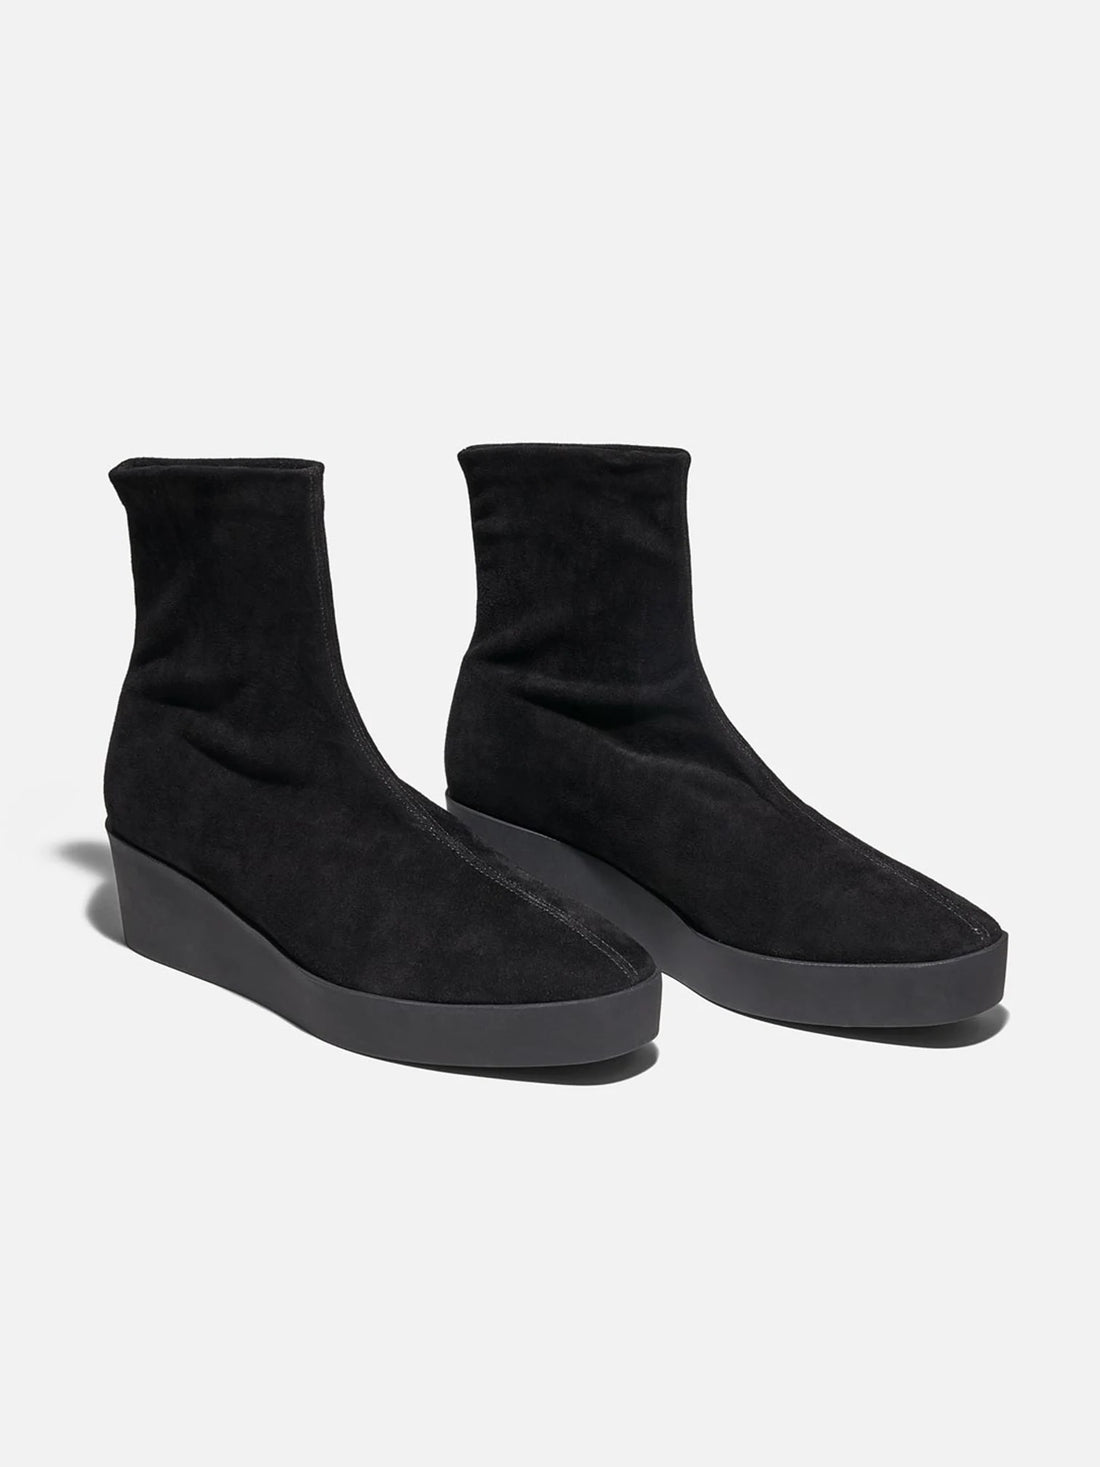 LEXA ankle boots, lambskin black